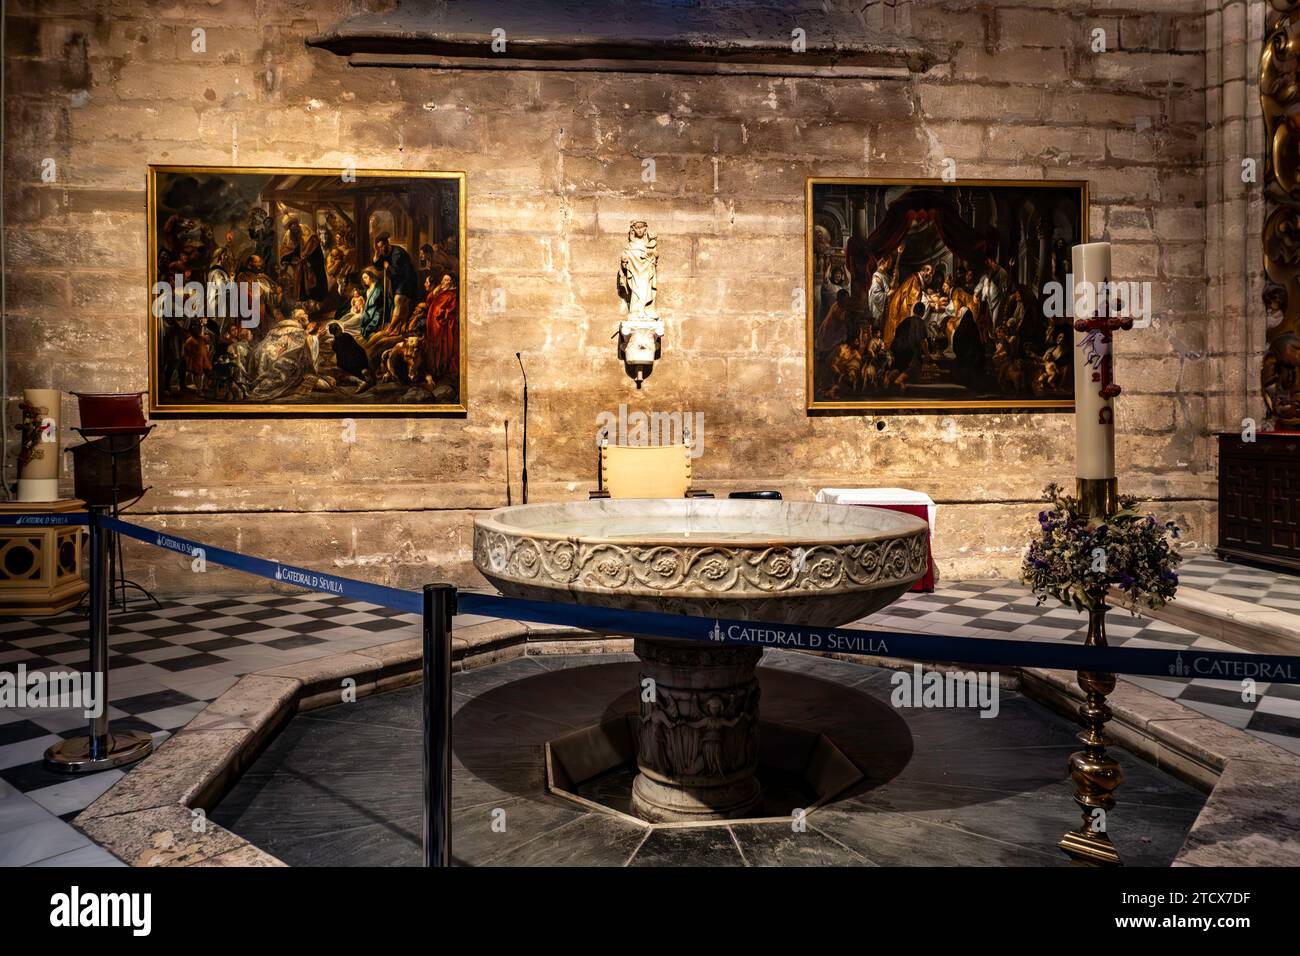 Eine ruhige Taufkammer in der Kathedrale von Sevilla mit einem Marmorbecken, religiösen Gemälden und einer eleganten Kerze, die die heilige Atmosphäre einfangen. Stockfoto